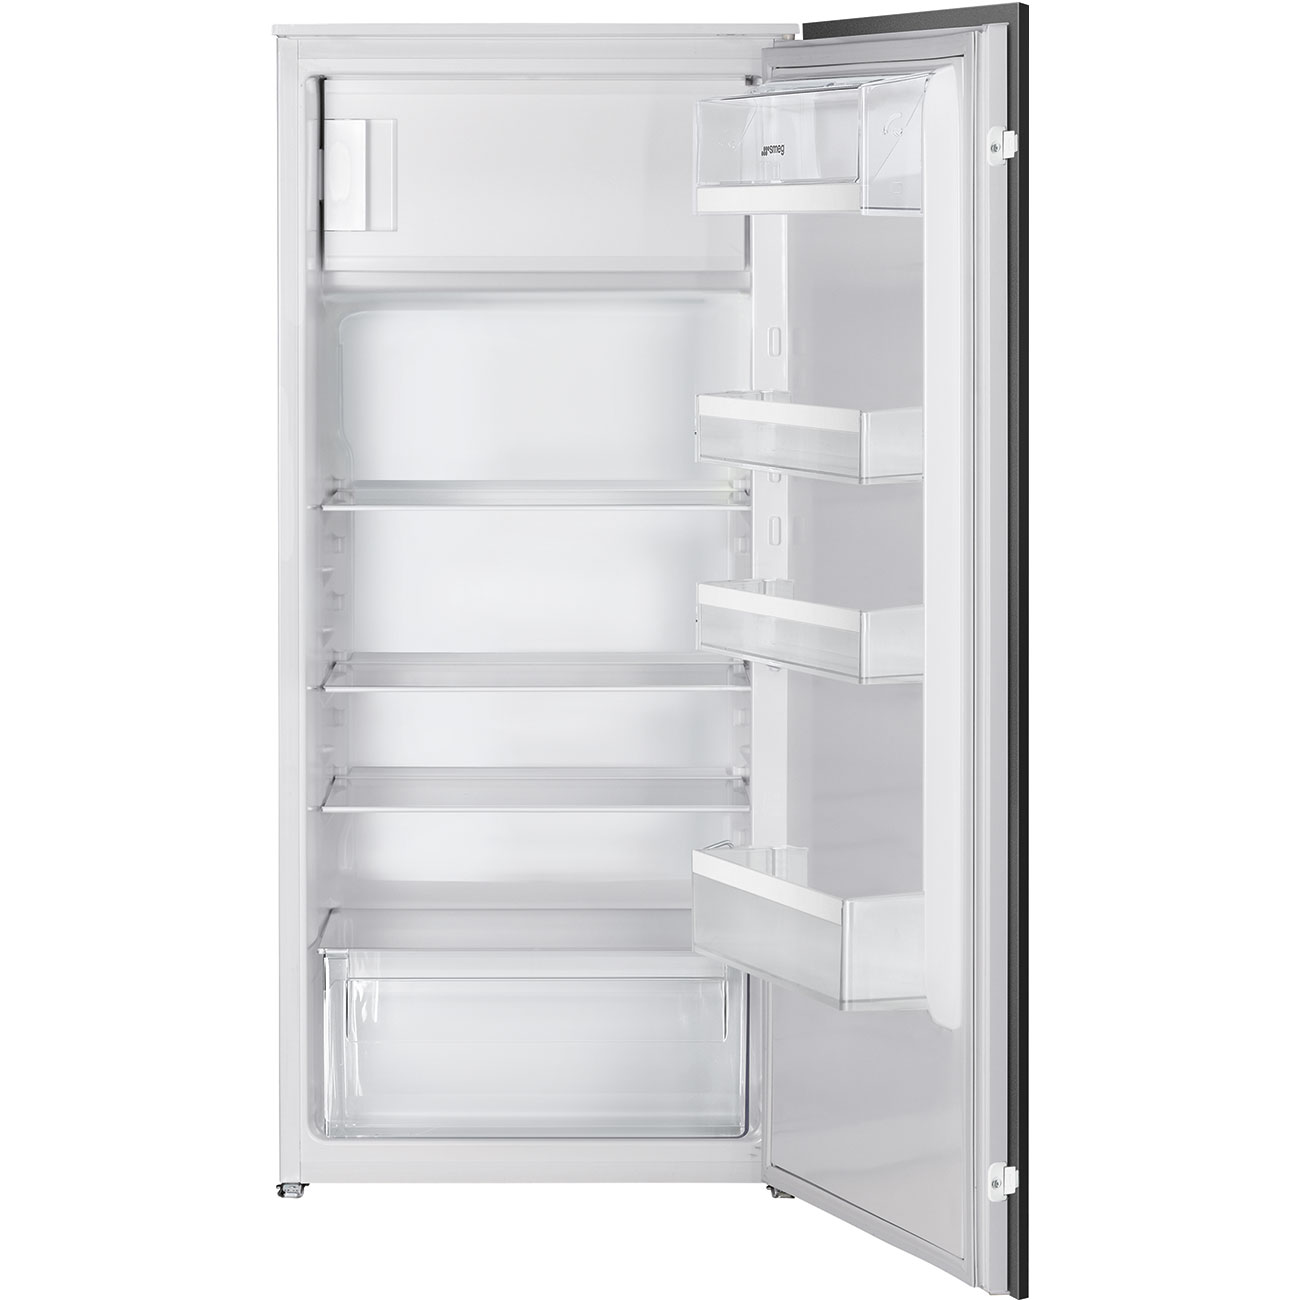 One Door Built-in refrigerator - Smeg_1